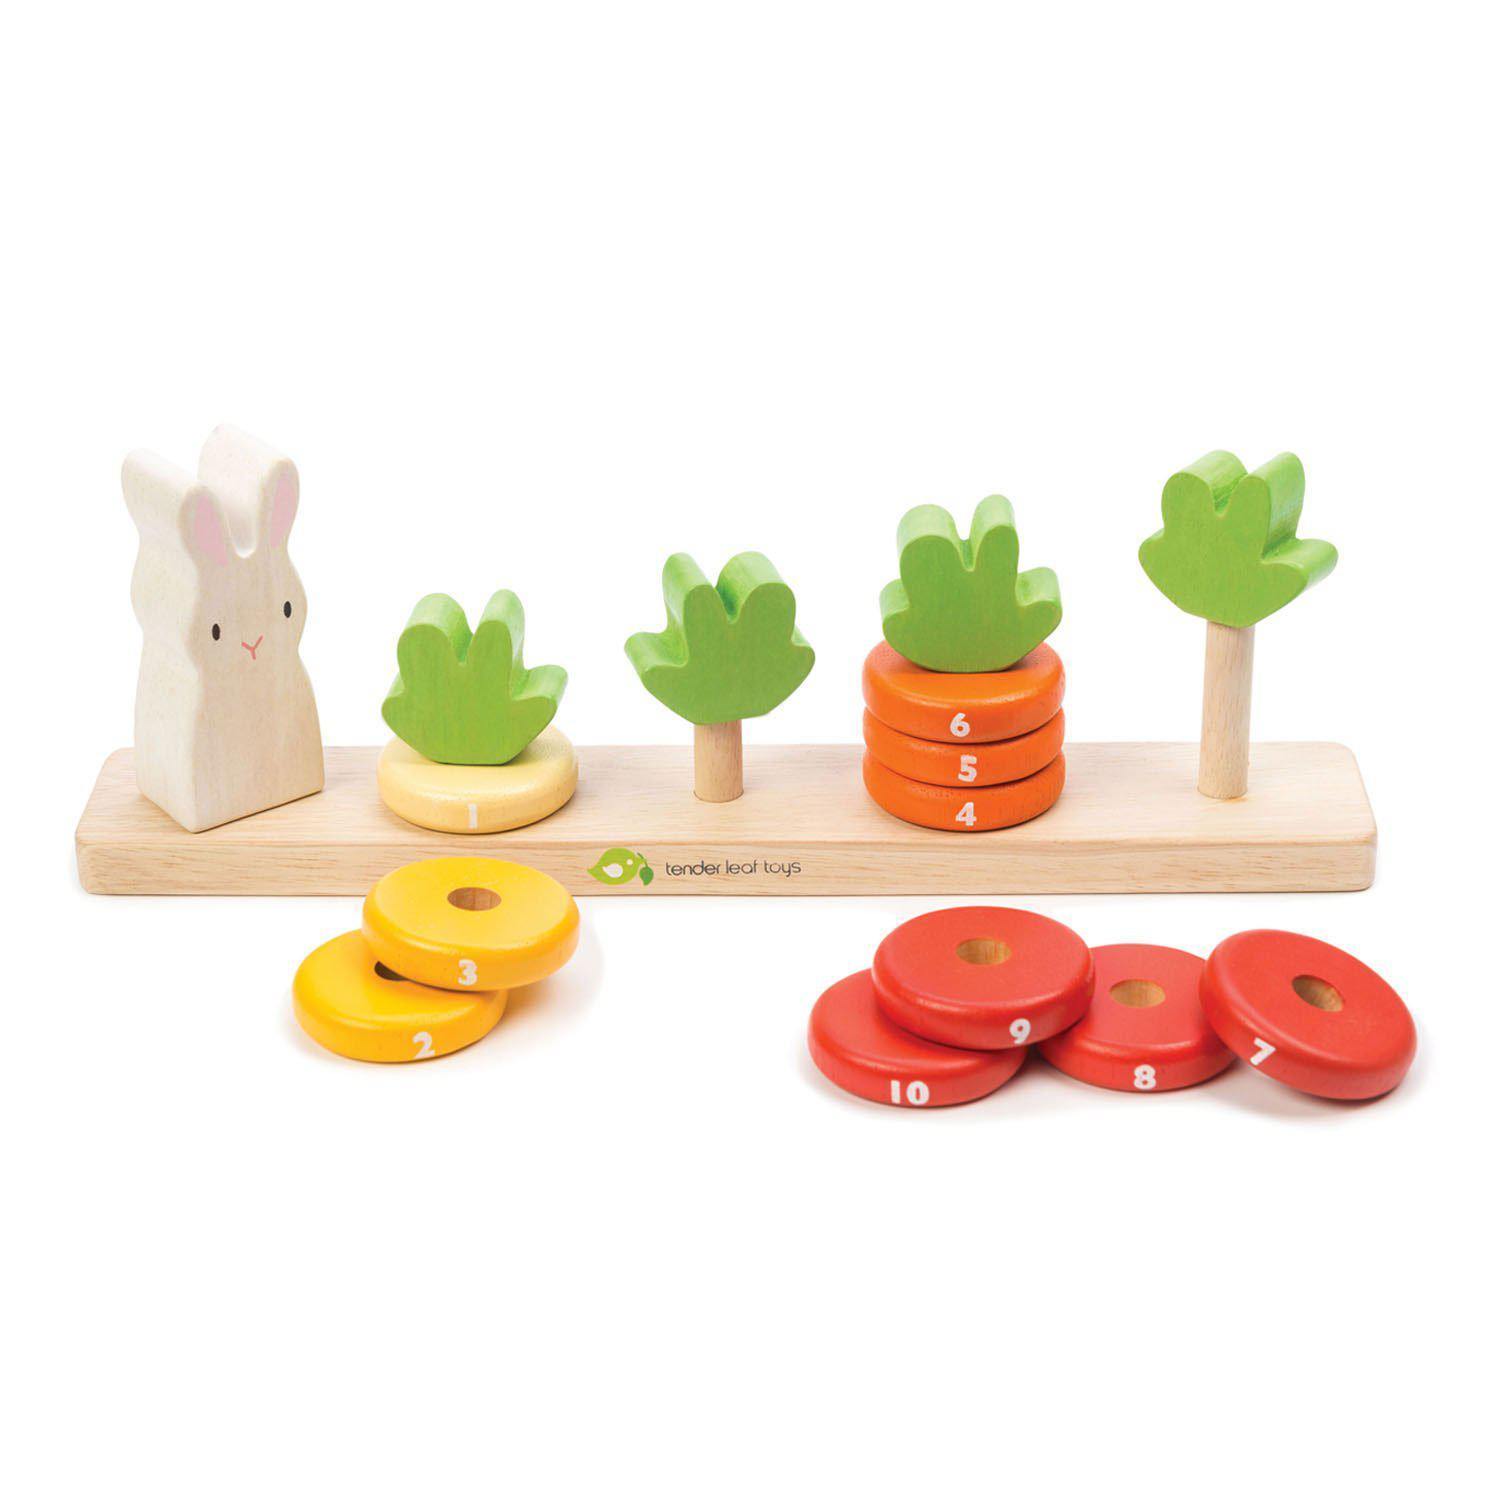 Murokszámoló, prémium minőségű fából - Counting Carrots - 16 darab - Tender Leaf Toys-Tender Leaf Toys-3-Játszma.ro - A maradandó élmények boltja